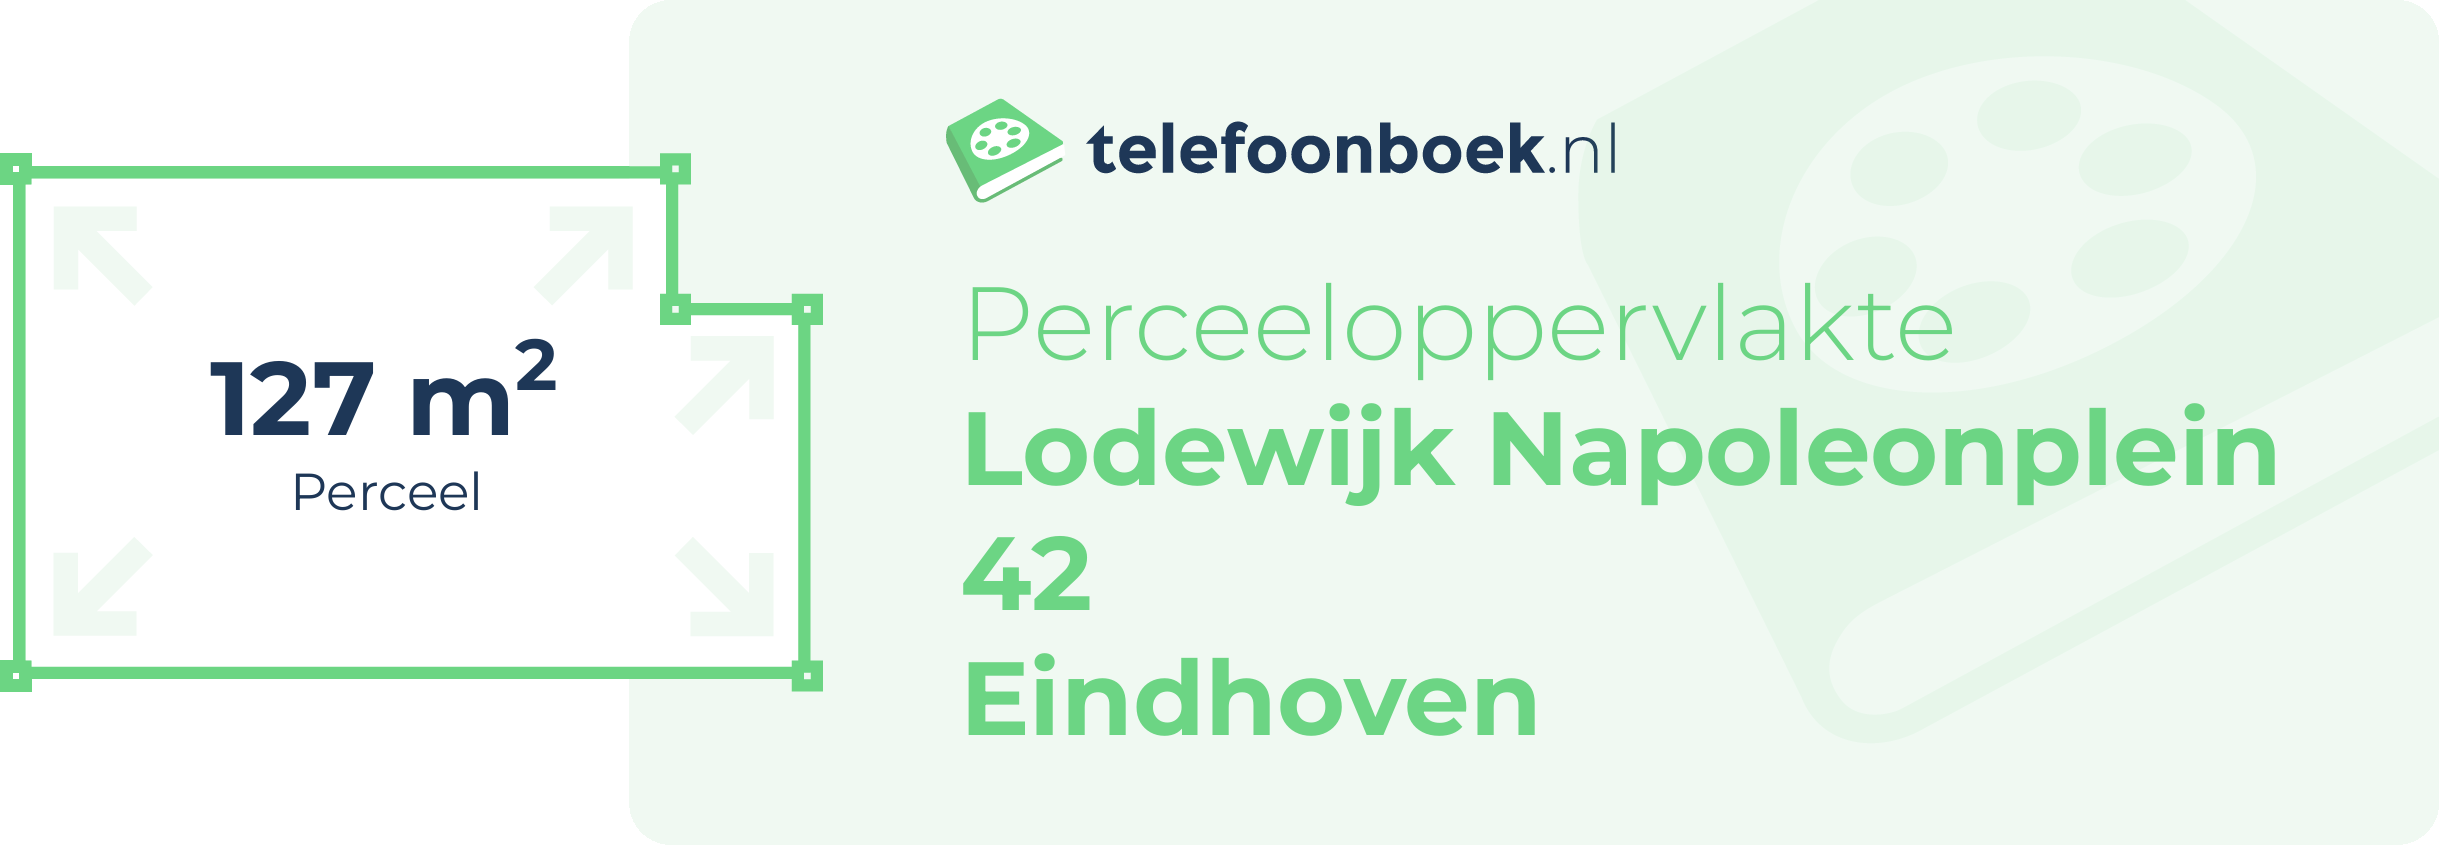 Perceeloppervlakte Lodewijk Napoleonplein 42 Eindhoven